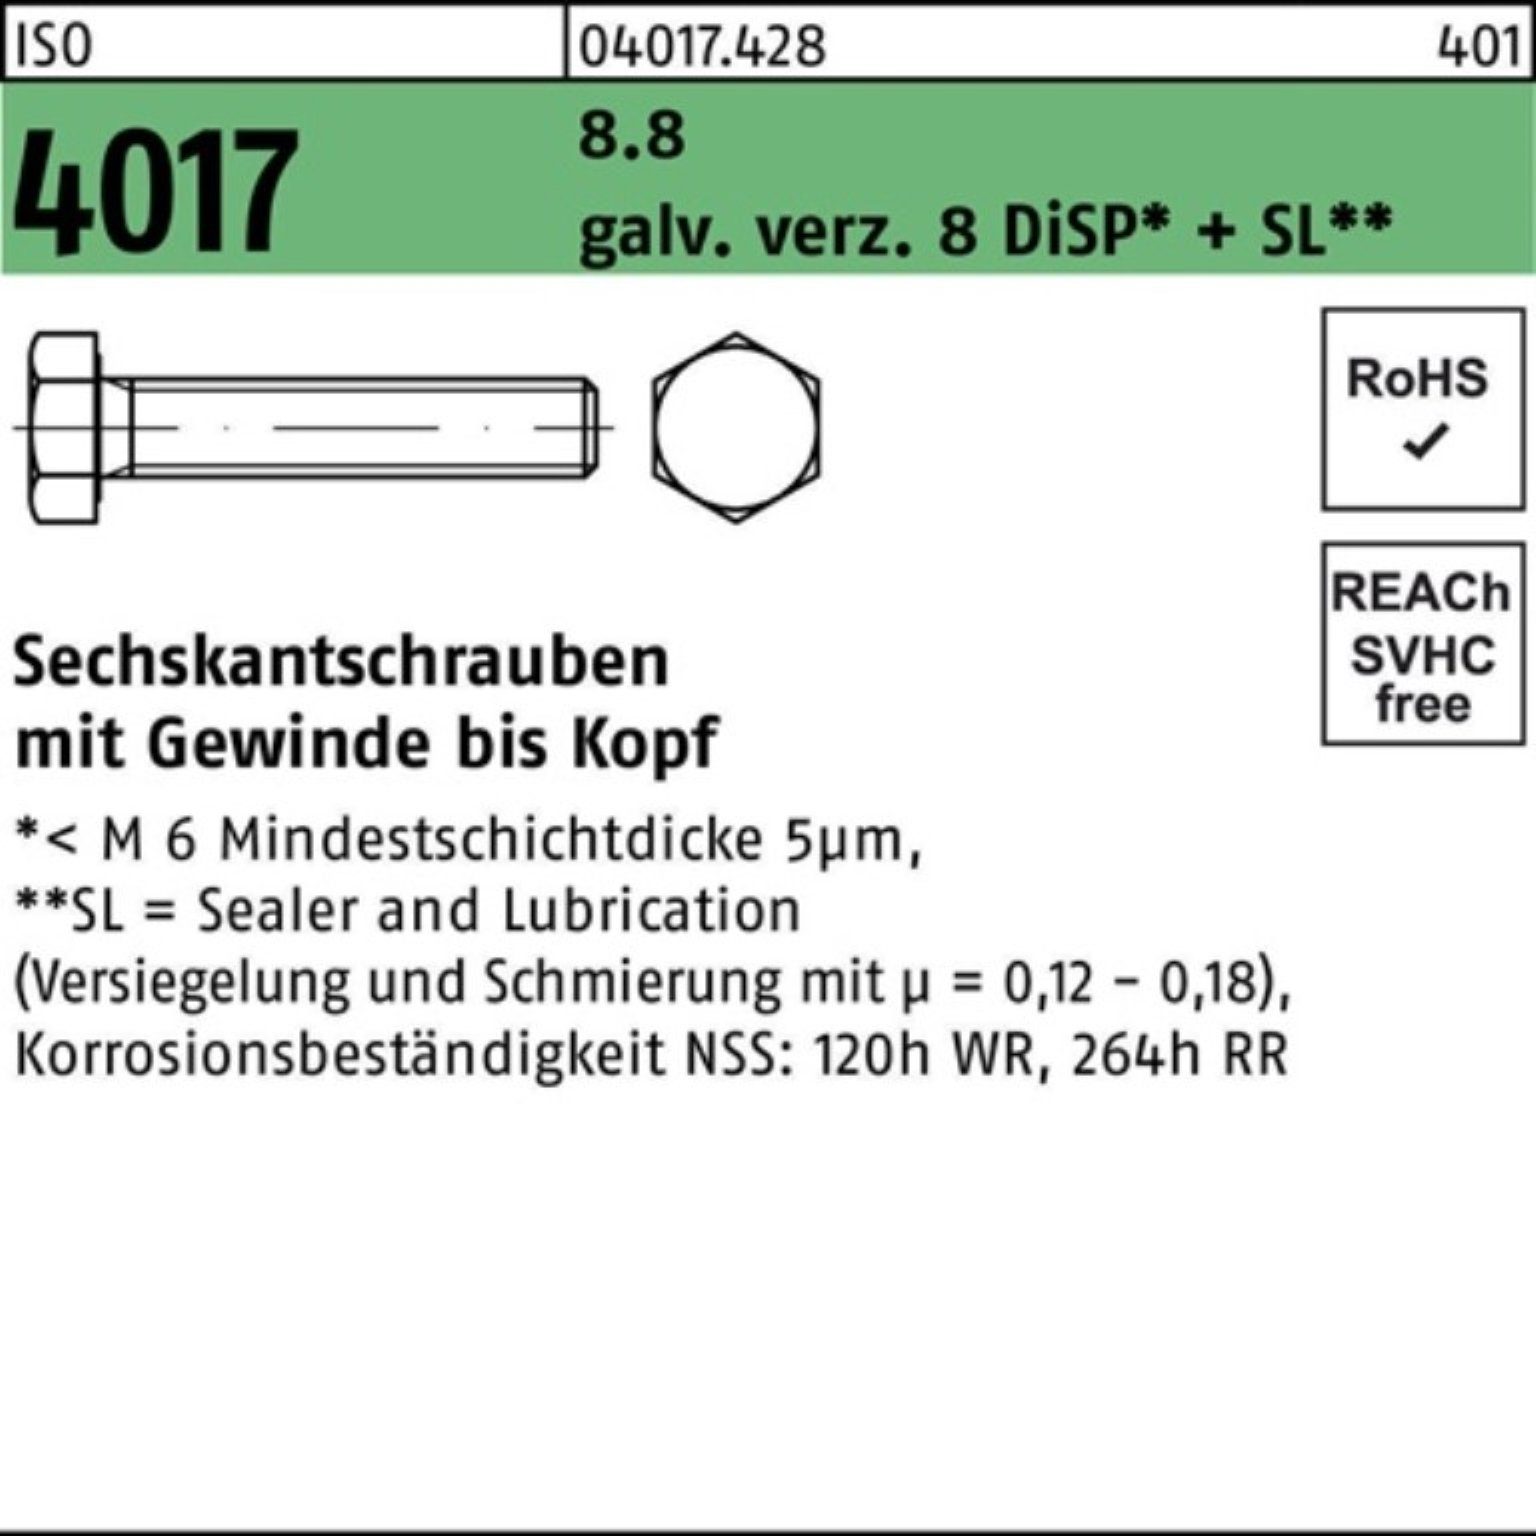 Bufab Sechskantschraube M16x Sechskantschraube 8 80 galv.verz. 100er ISO Pack 4017 DiSP VG 8.8